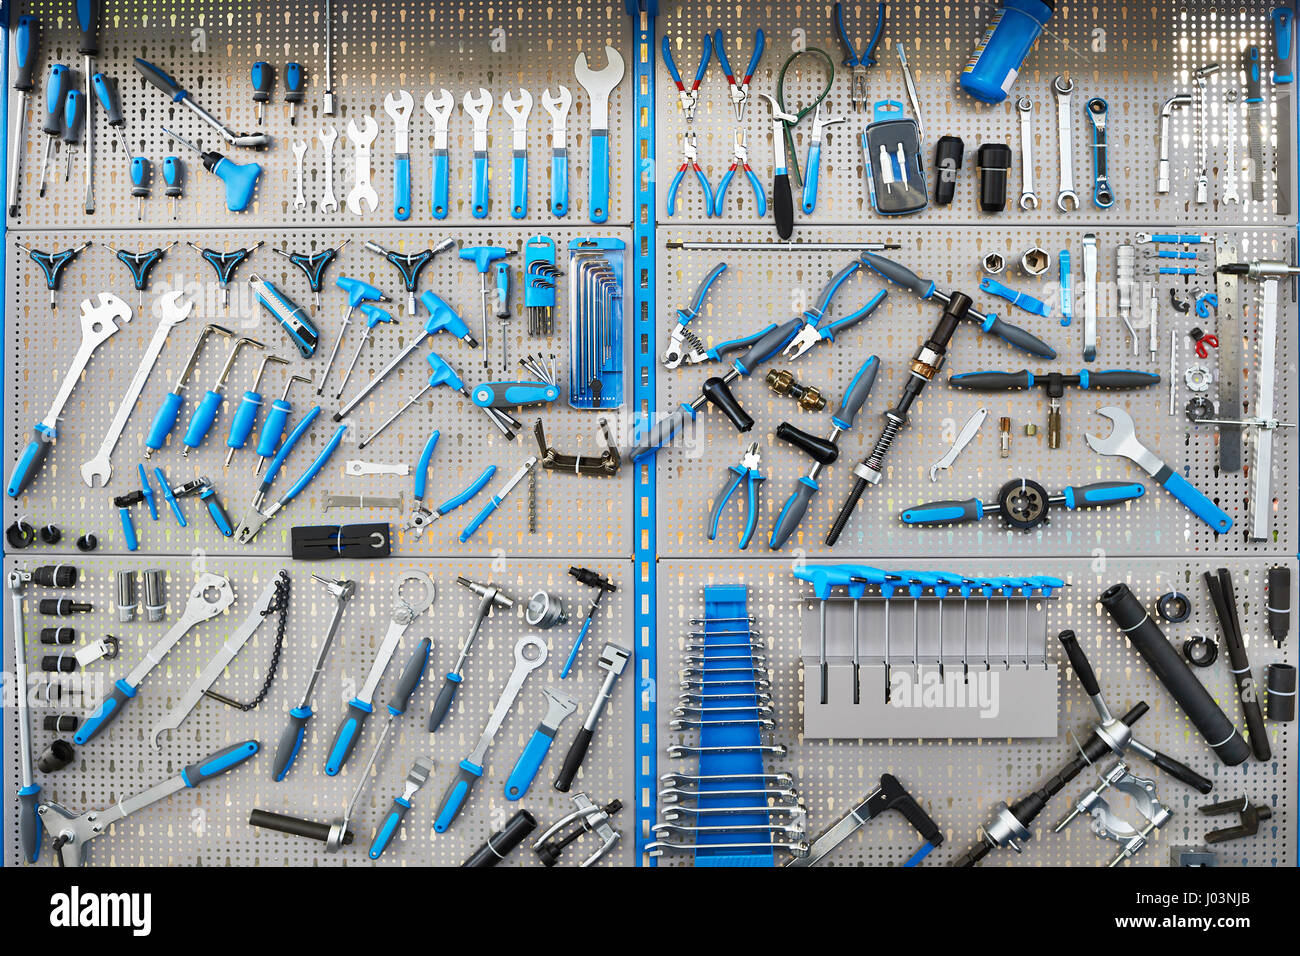 Großen Stand mit Set-Tools auf Fahrradwerkstatt Stockfotografie - Alamy